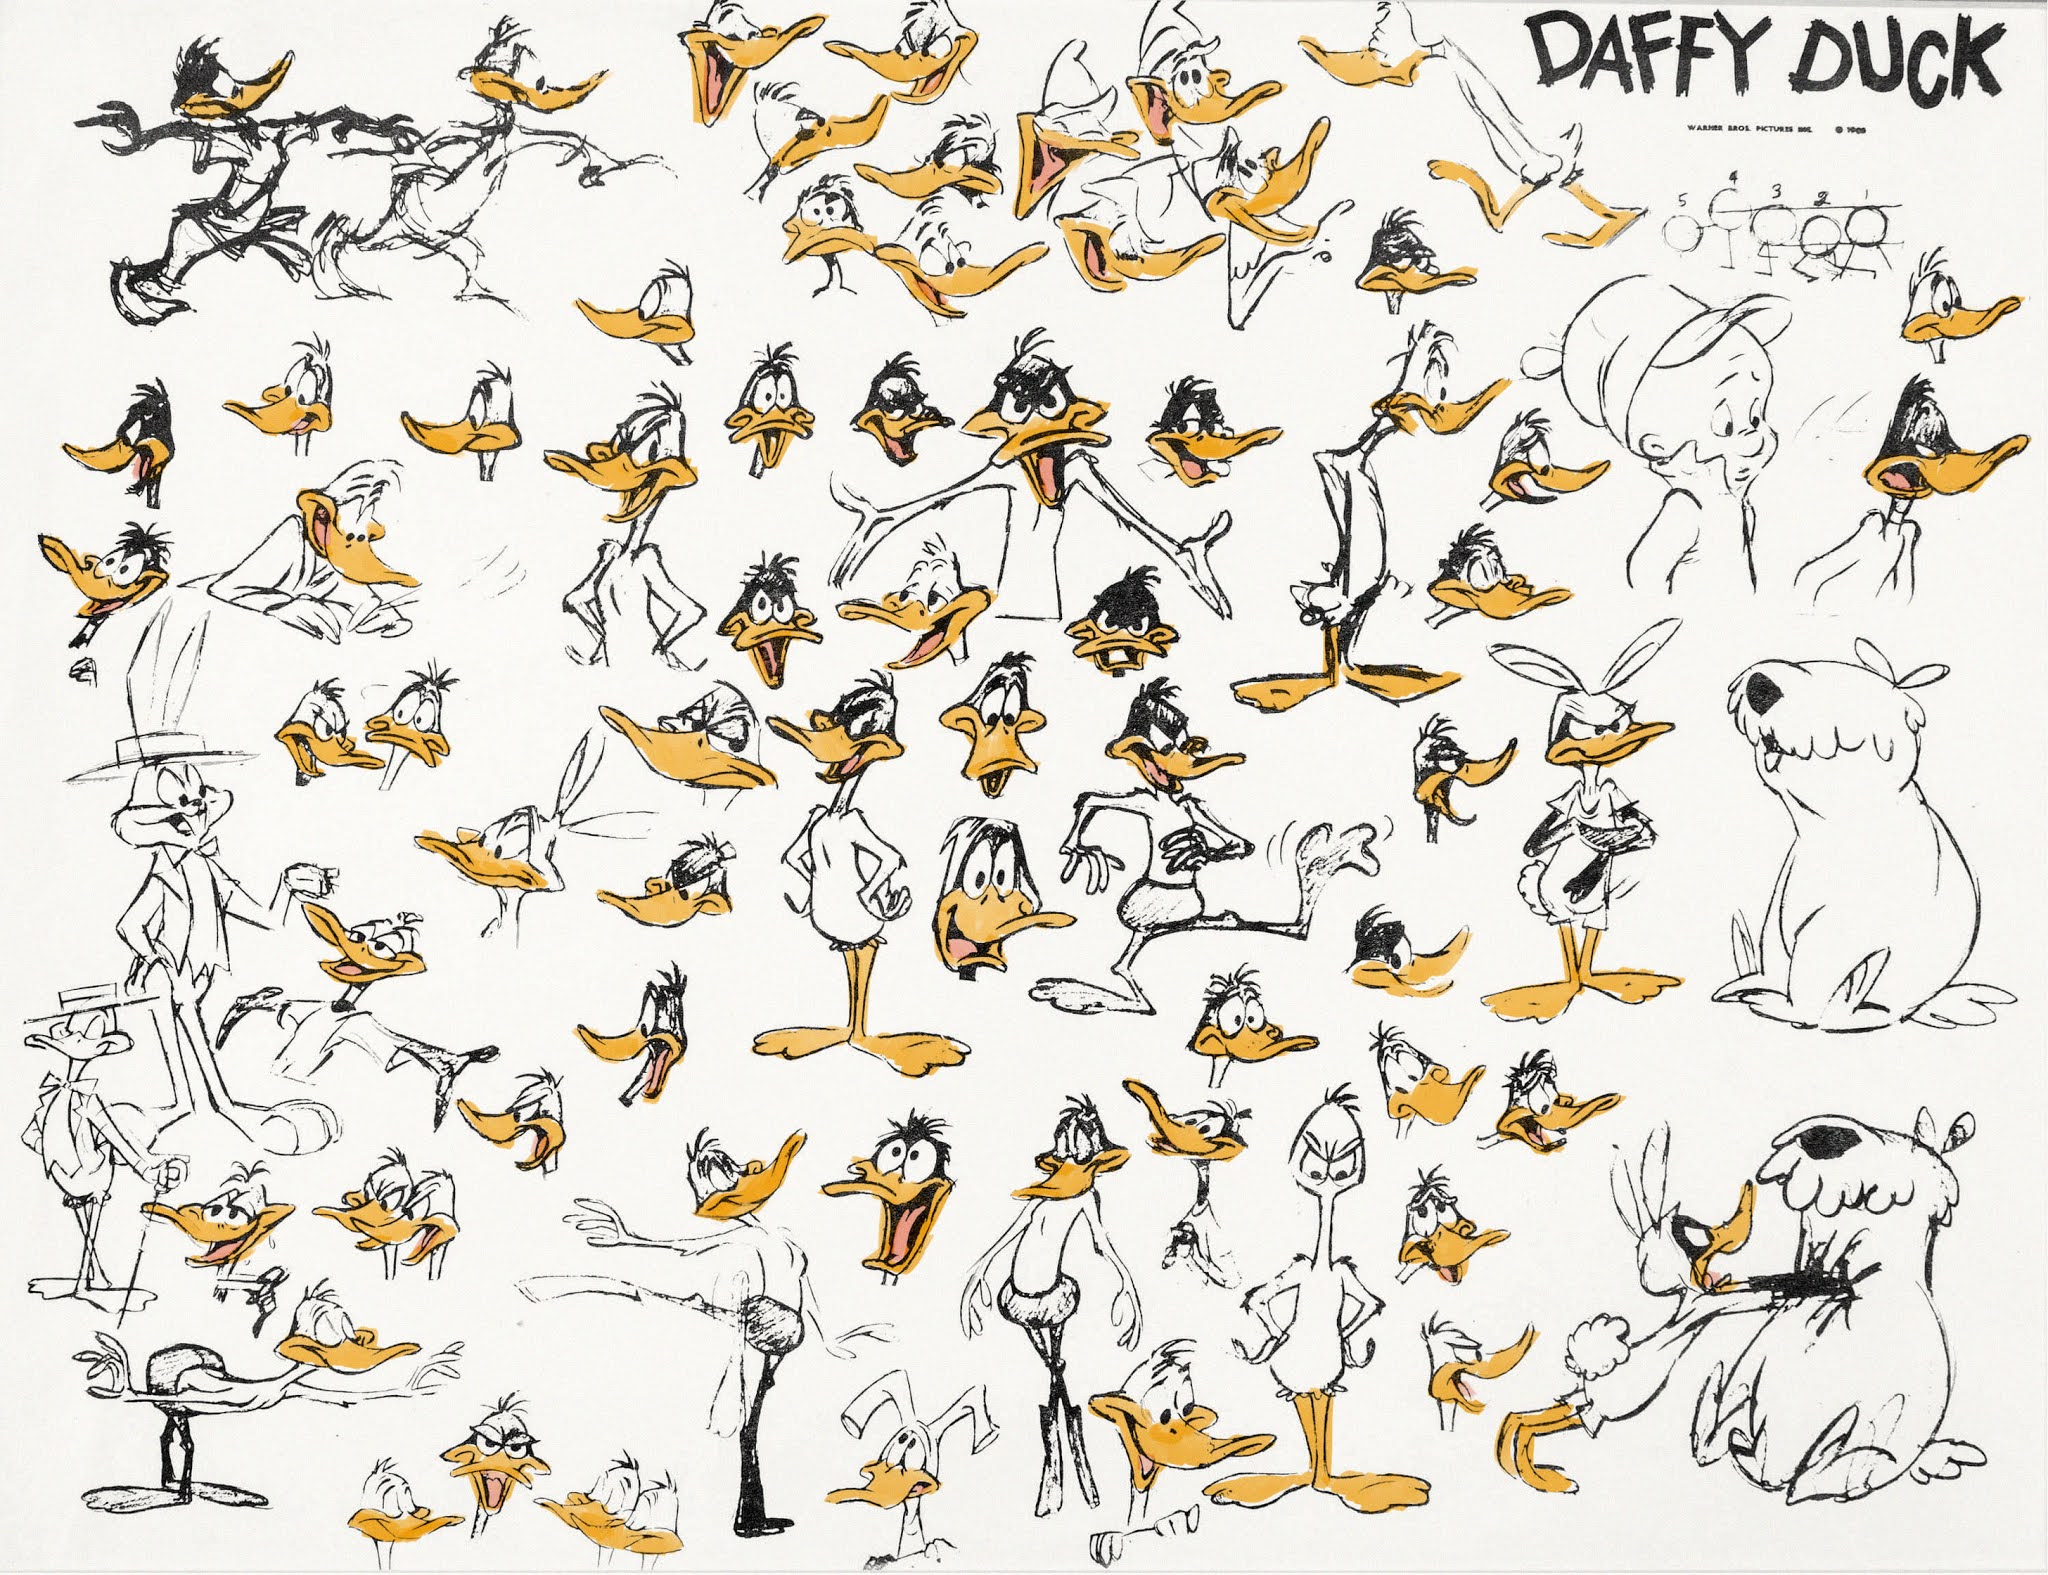 Legendary Daffy Duck studio model sheet from the 1960s.